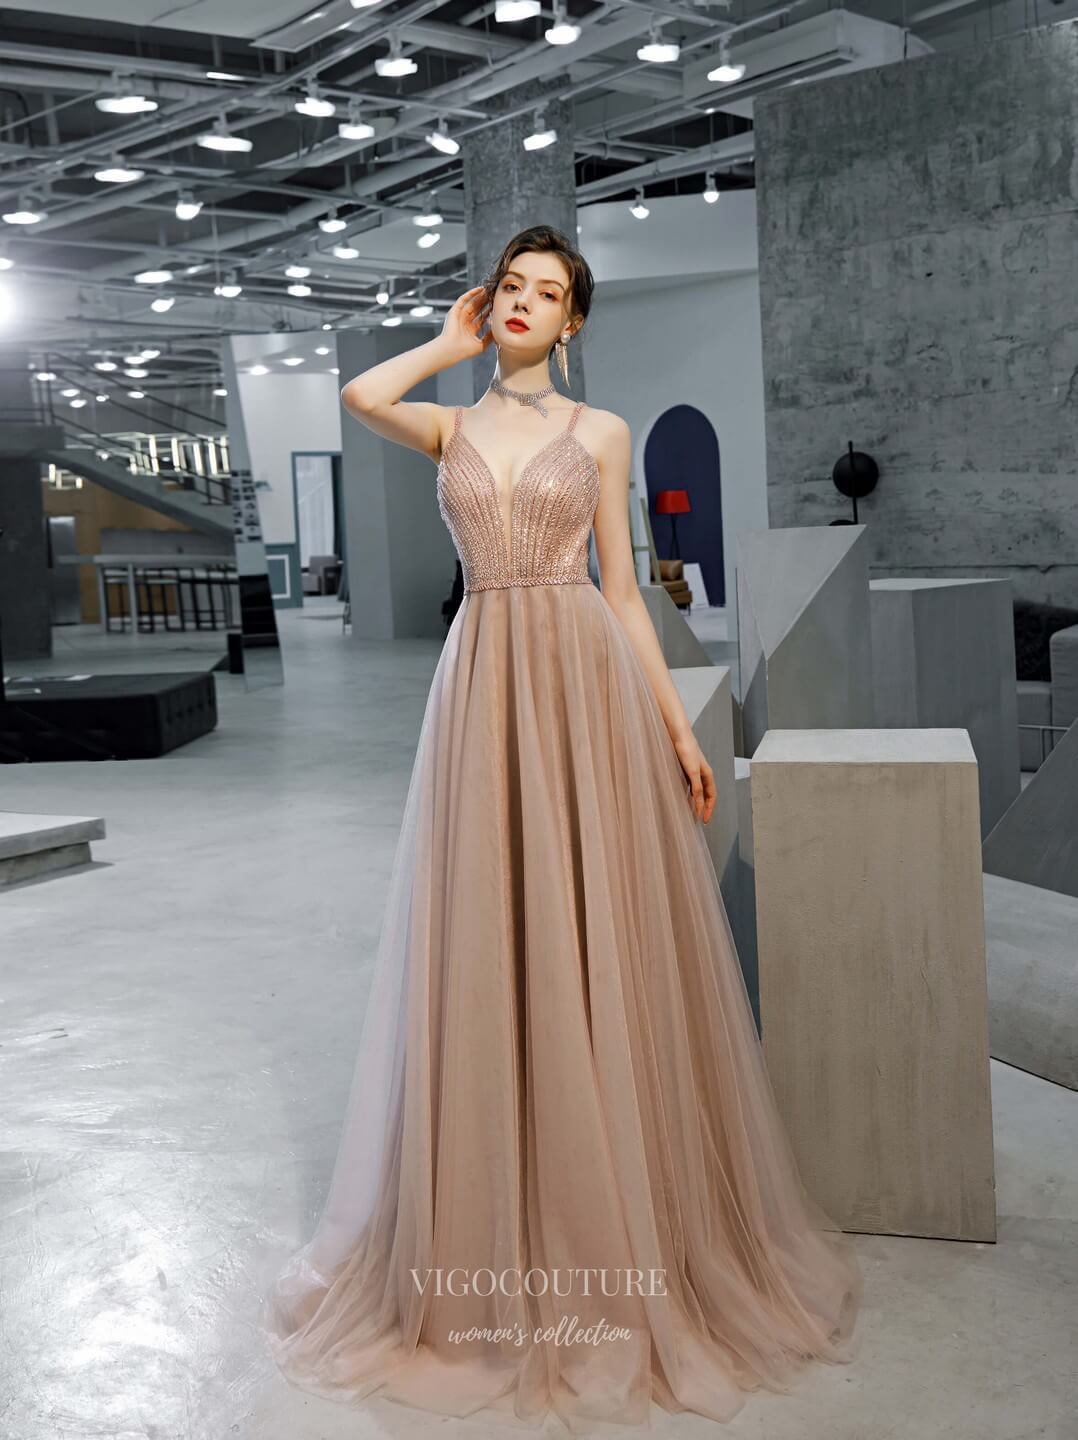 vigocouture-Blush Beaded Spaghetti Strap Prom Dress 20223-Prom Dresses-vigocouture-Blush-US2-